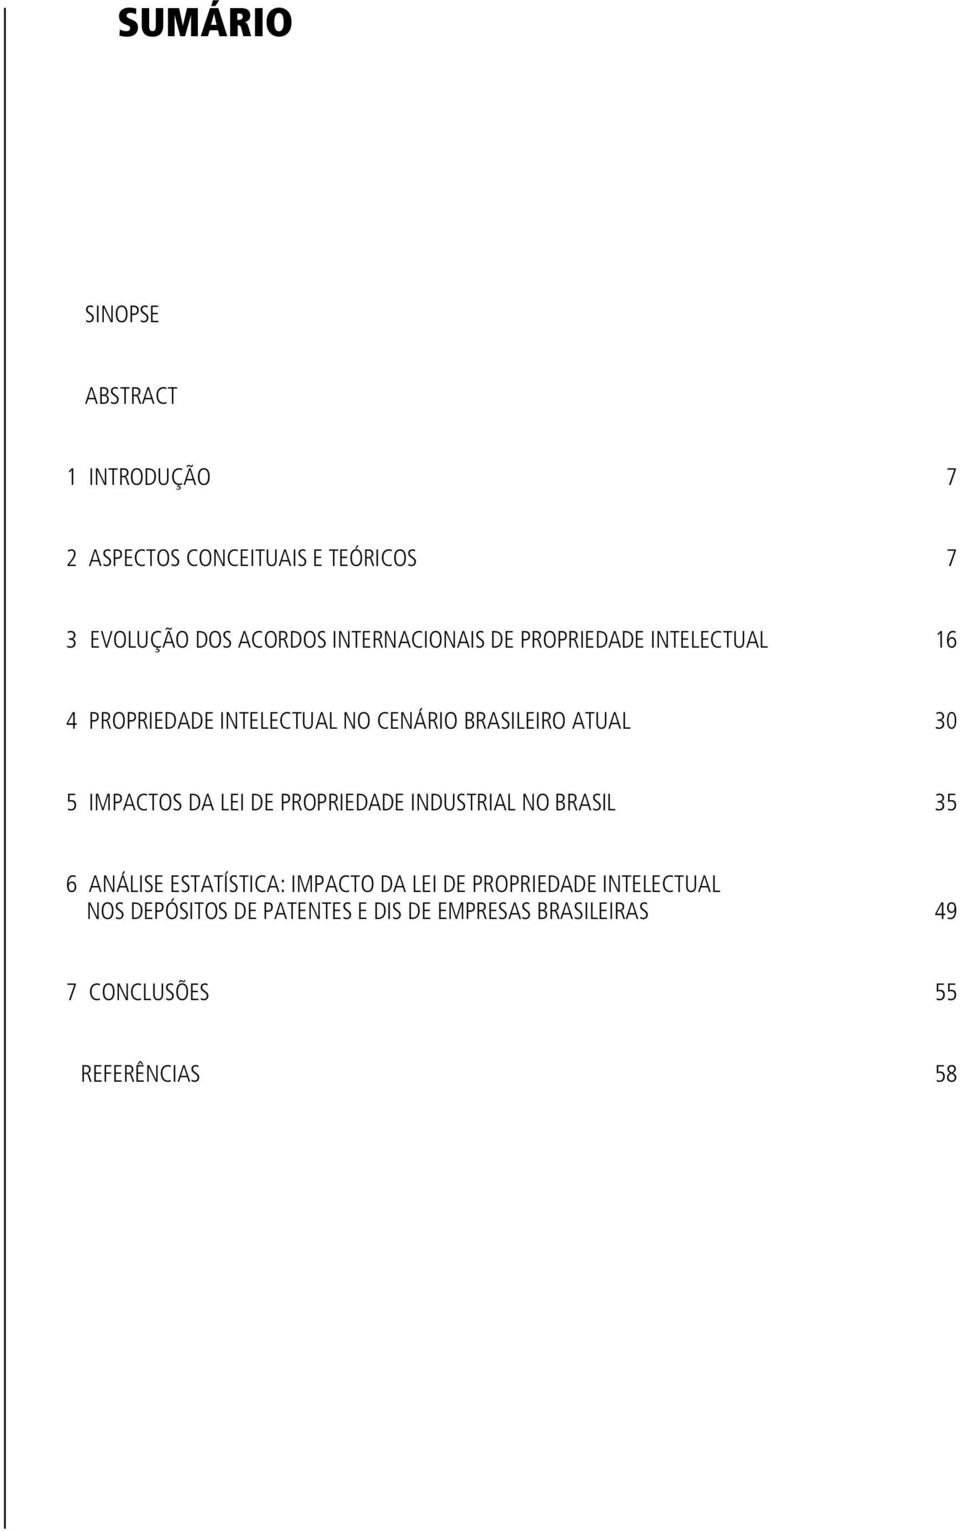 5 IMPACTOS DA LEI DE PROPRIEDADE INDUSTRIAL NO BRASIL 35 6 ANÁLISE ESTATÍSTICA: IMPACTO DA LEI DE